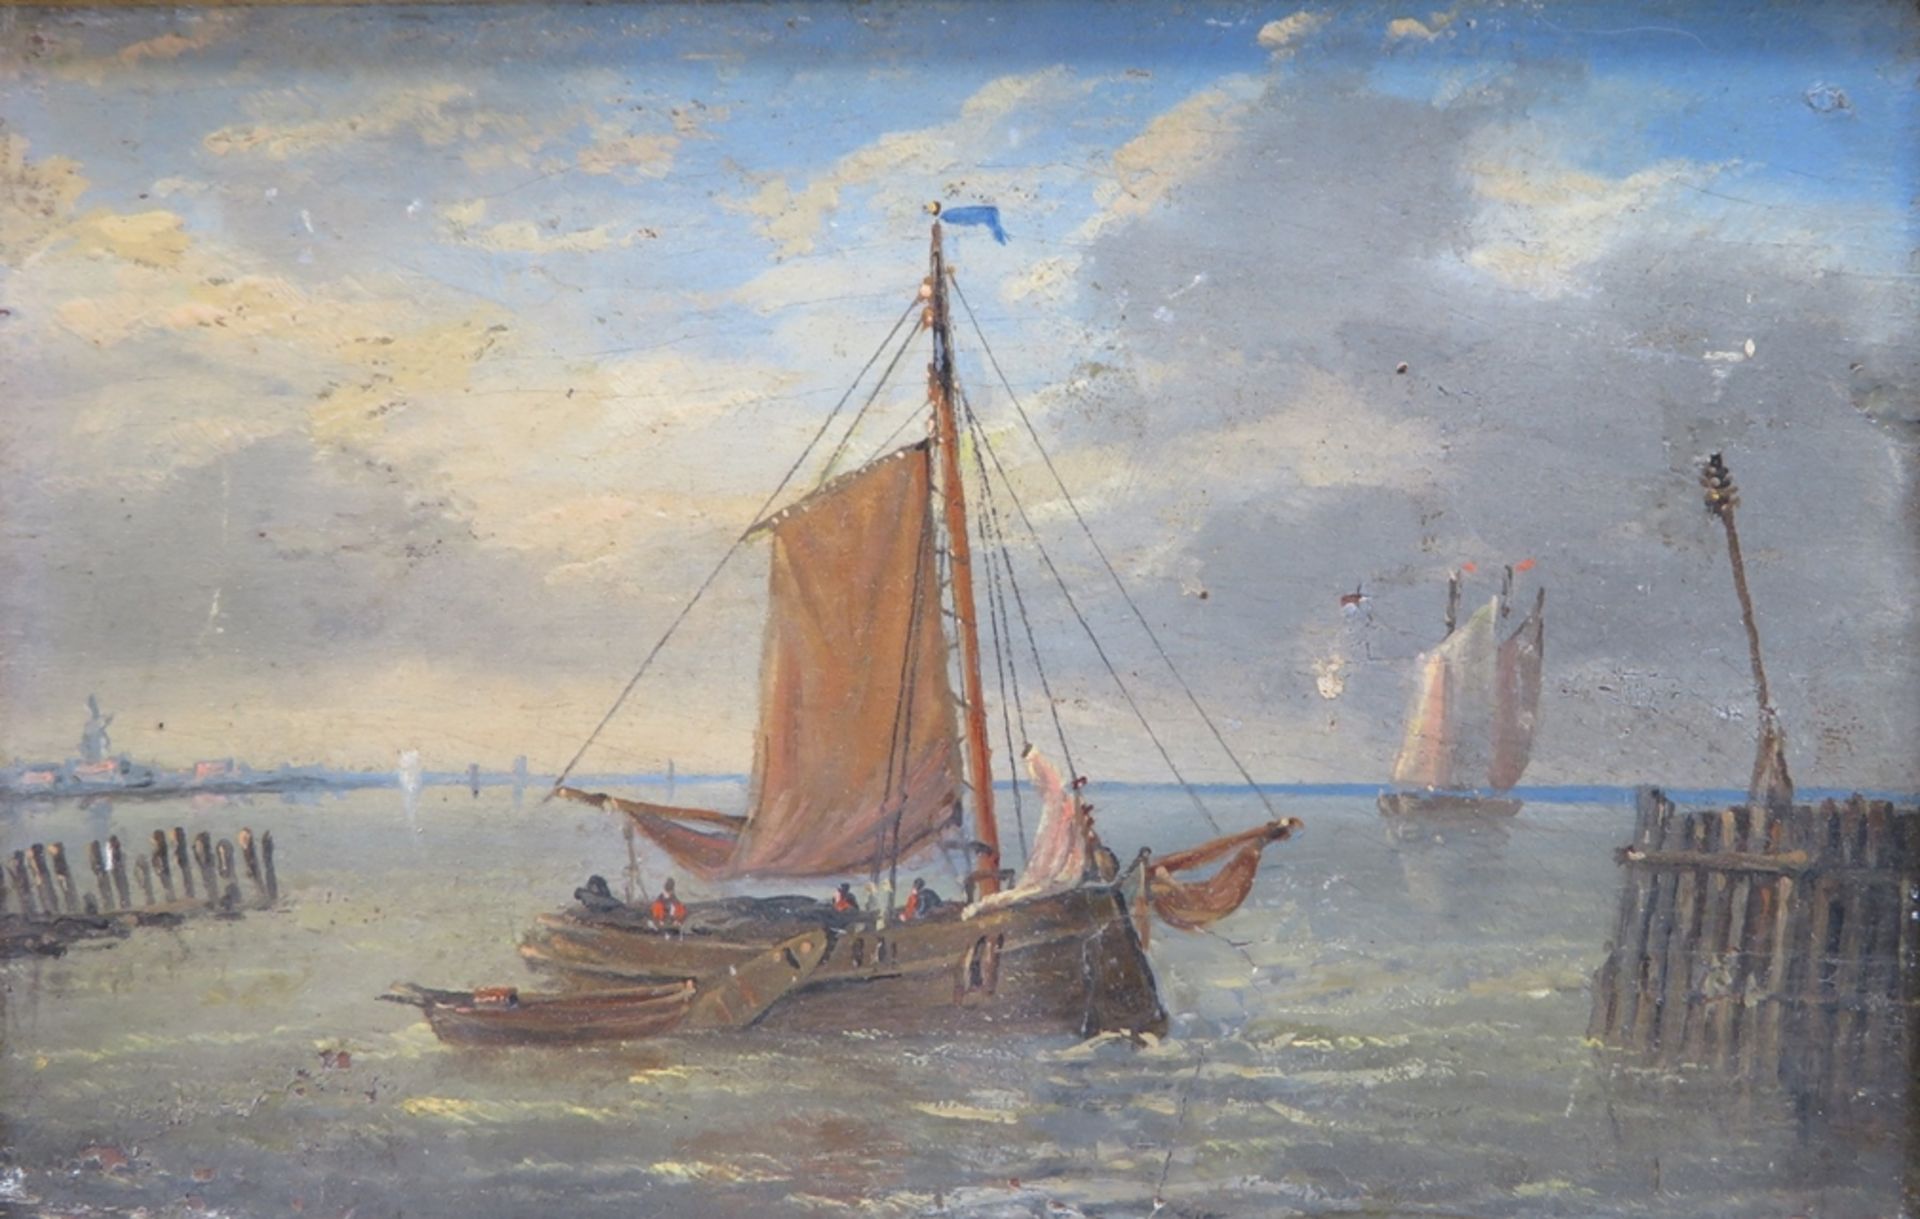 Niederlande, 19. Jahrhundert, "Fischerboote auf See", Öl/Holz, 11 x 16,5 cm, R. (besch.) [21 x 26,5